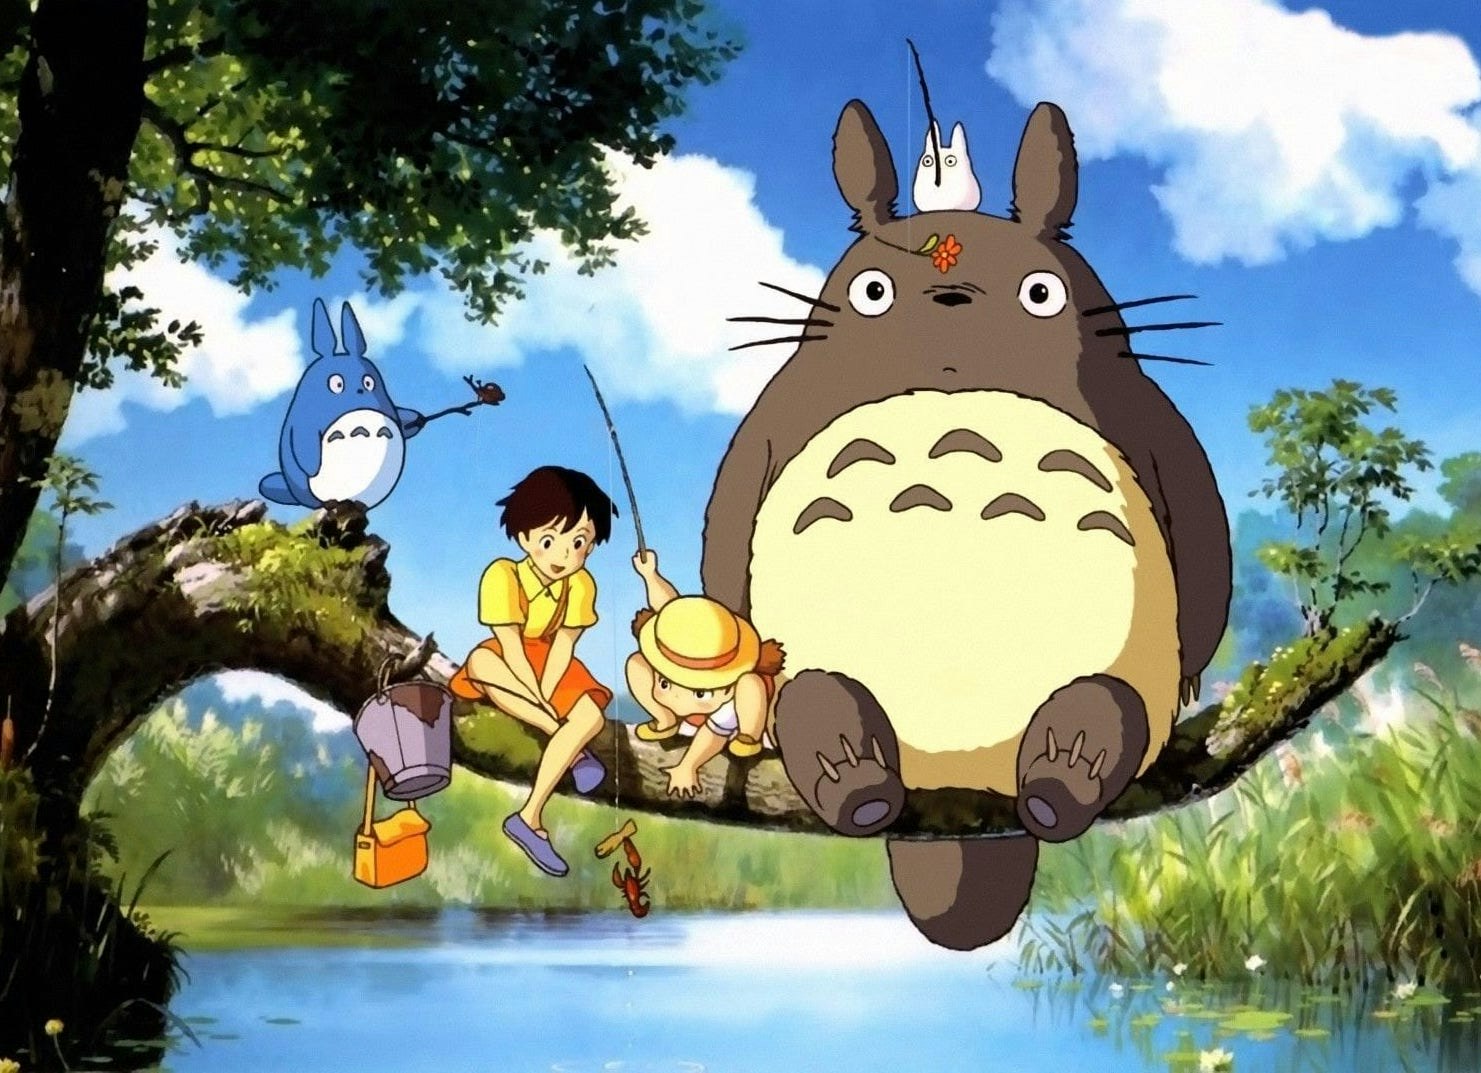 Mój sąsiad Totoro.jpg